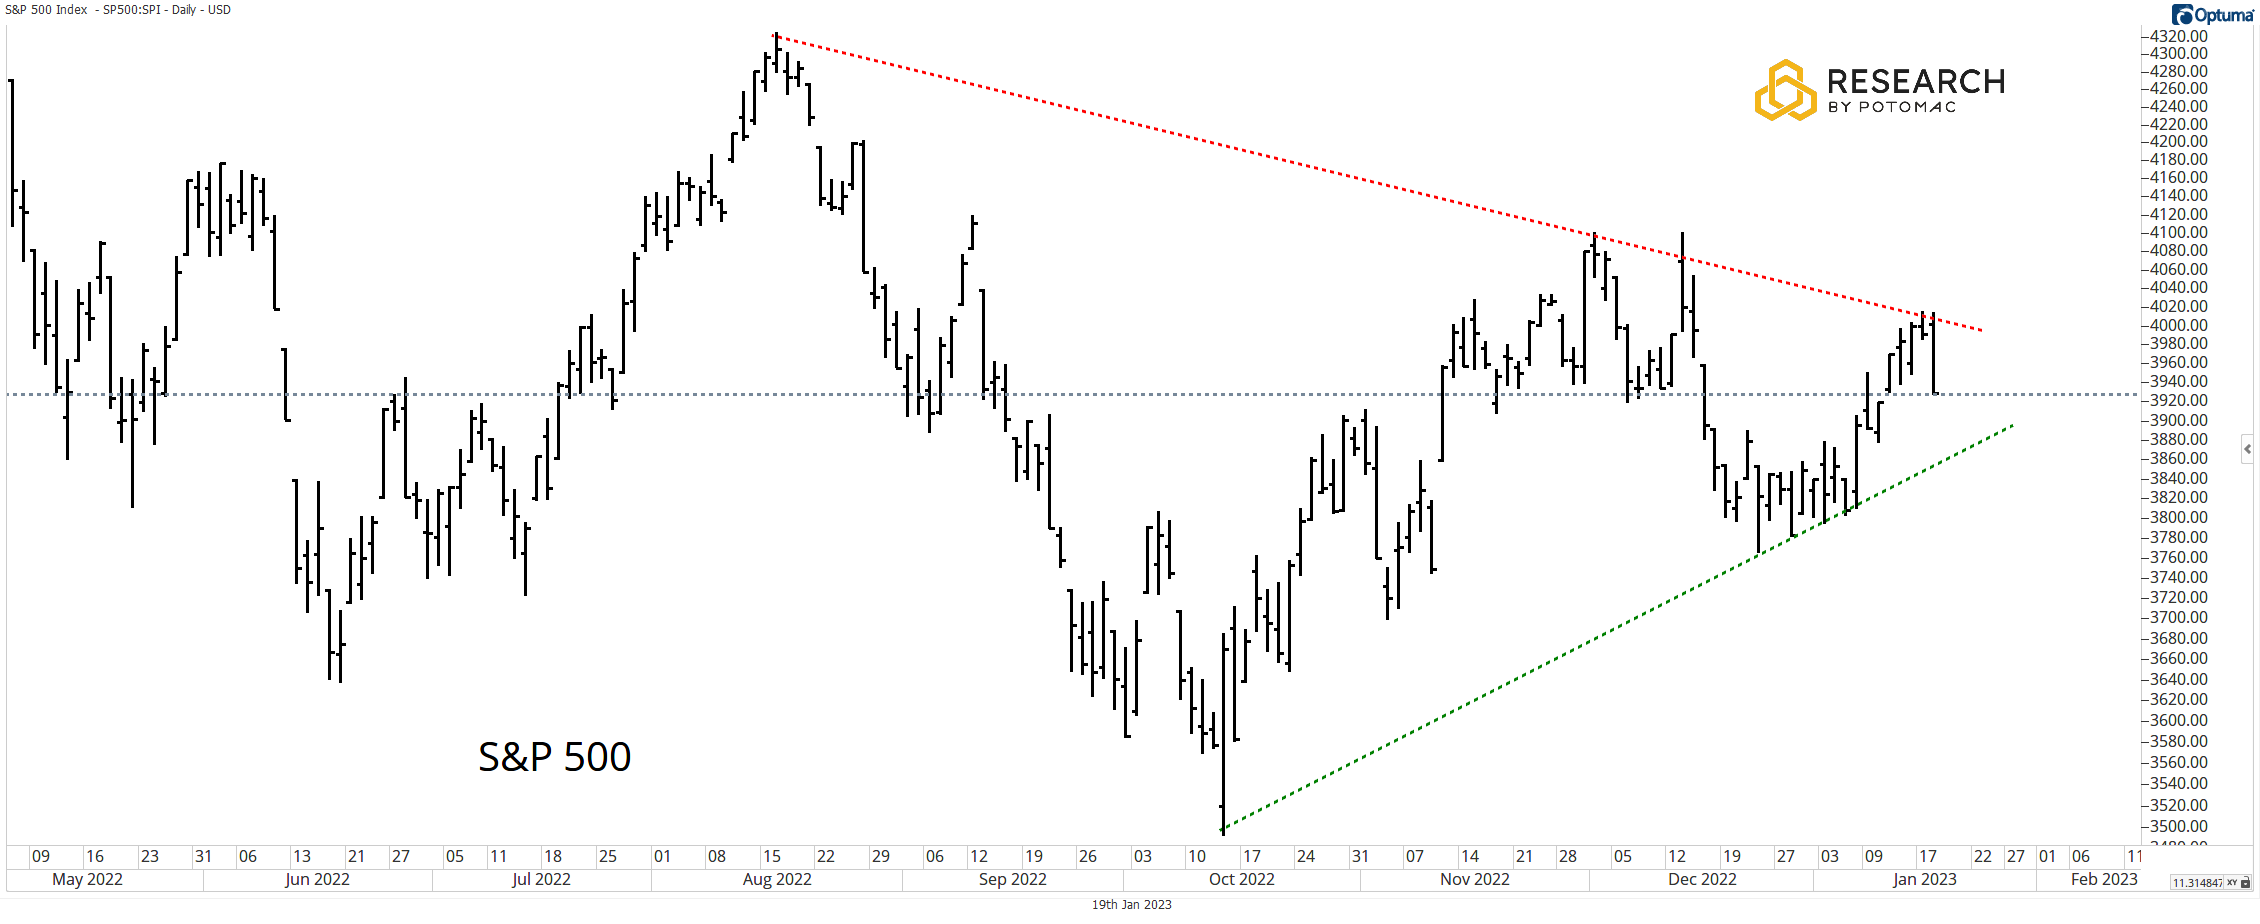 S&P 500 a trojúhelníková formace